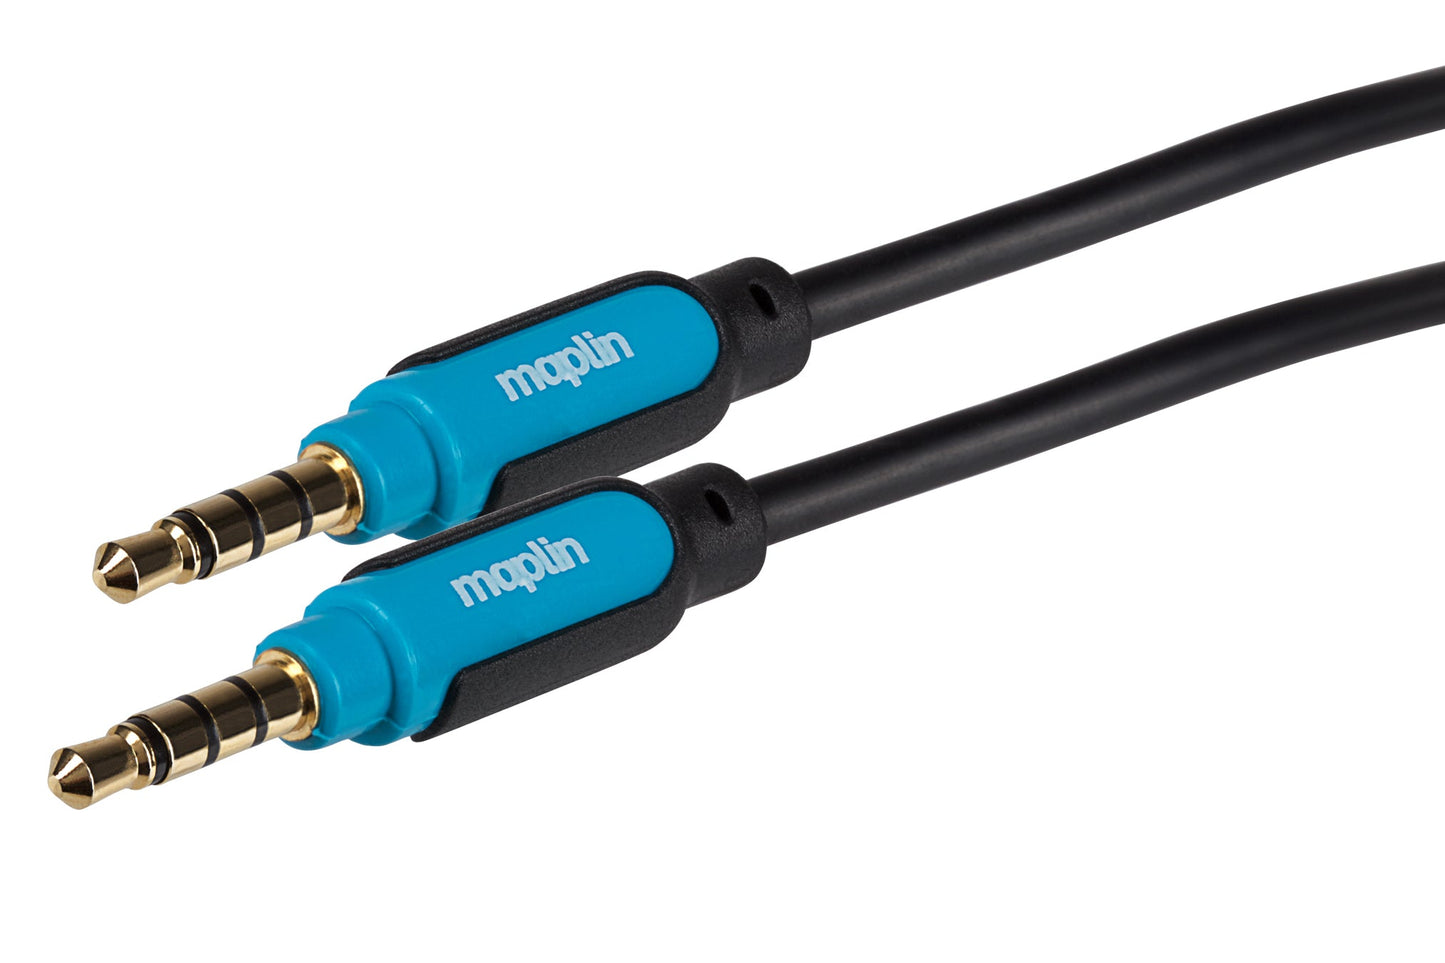 Maplin 3.5mm Aux Stereo 4-Pole Jack Plug to 3.5mm 4-Pole Jack Plug Cable - Black, 5m - maplin.co.uk